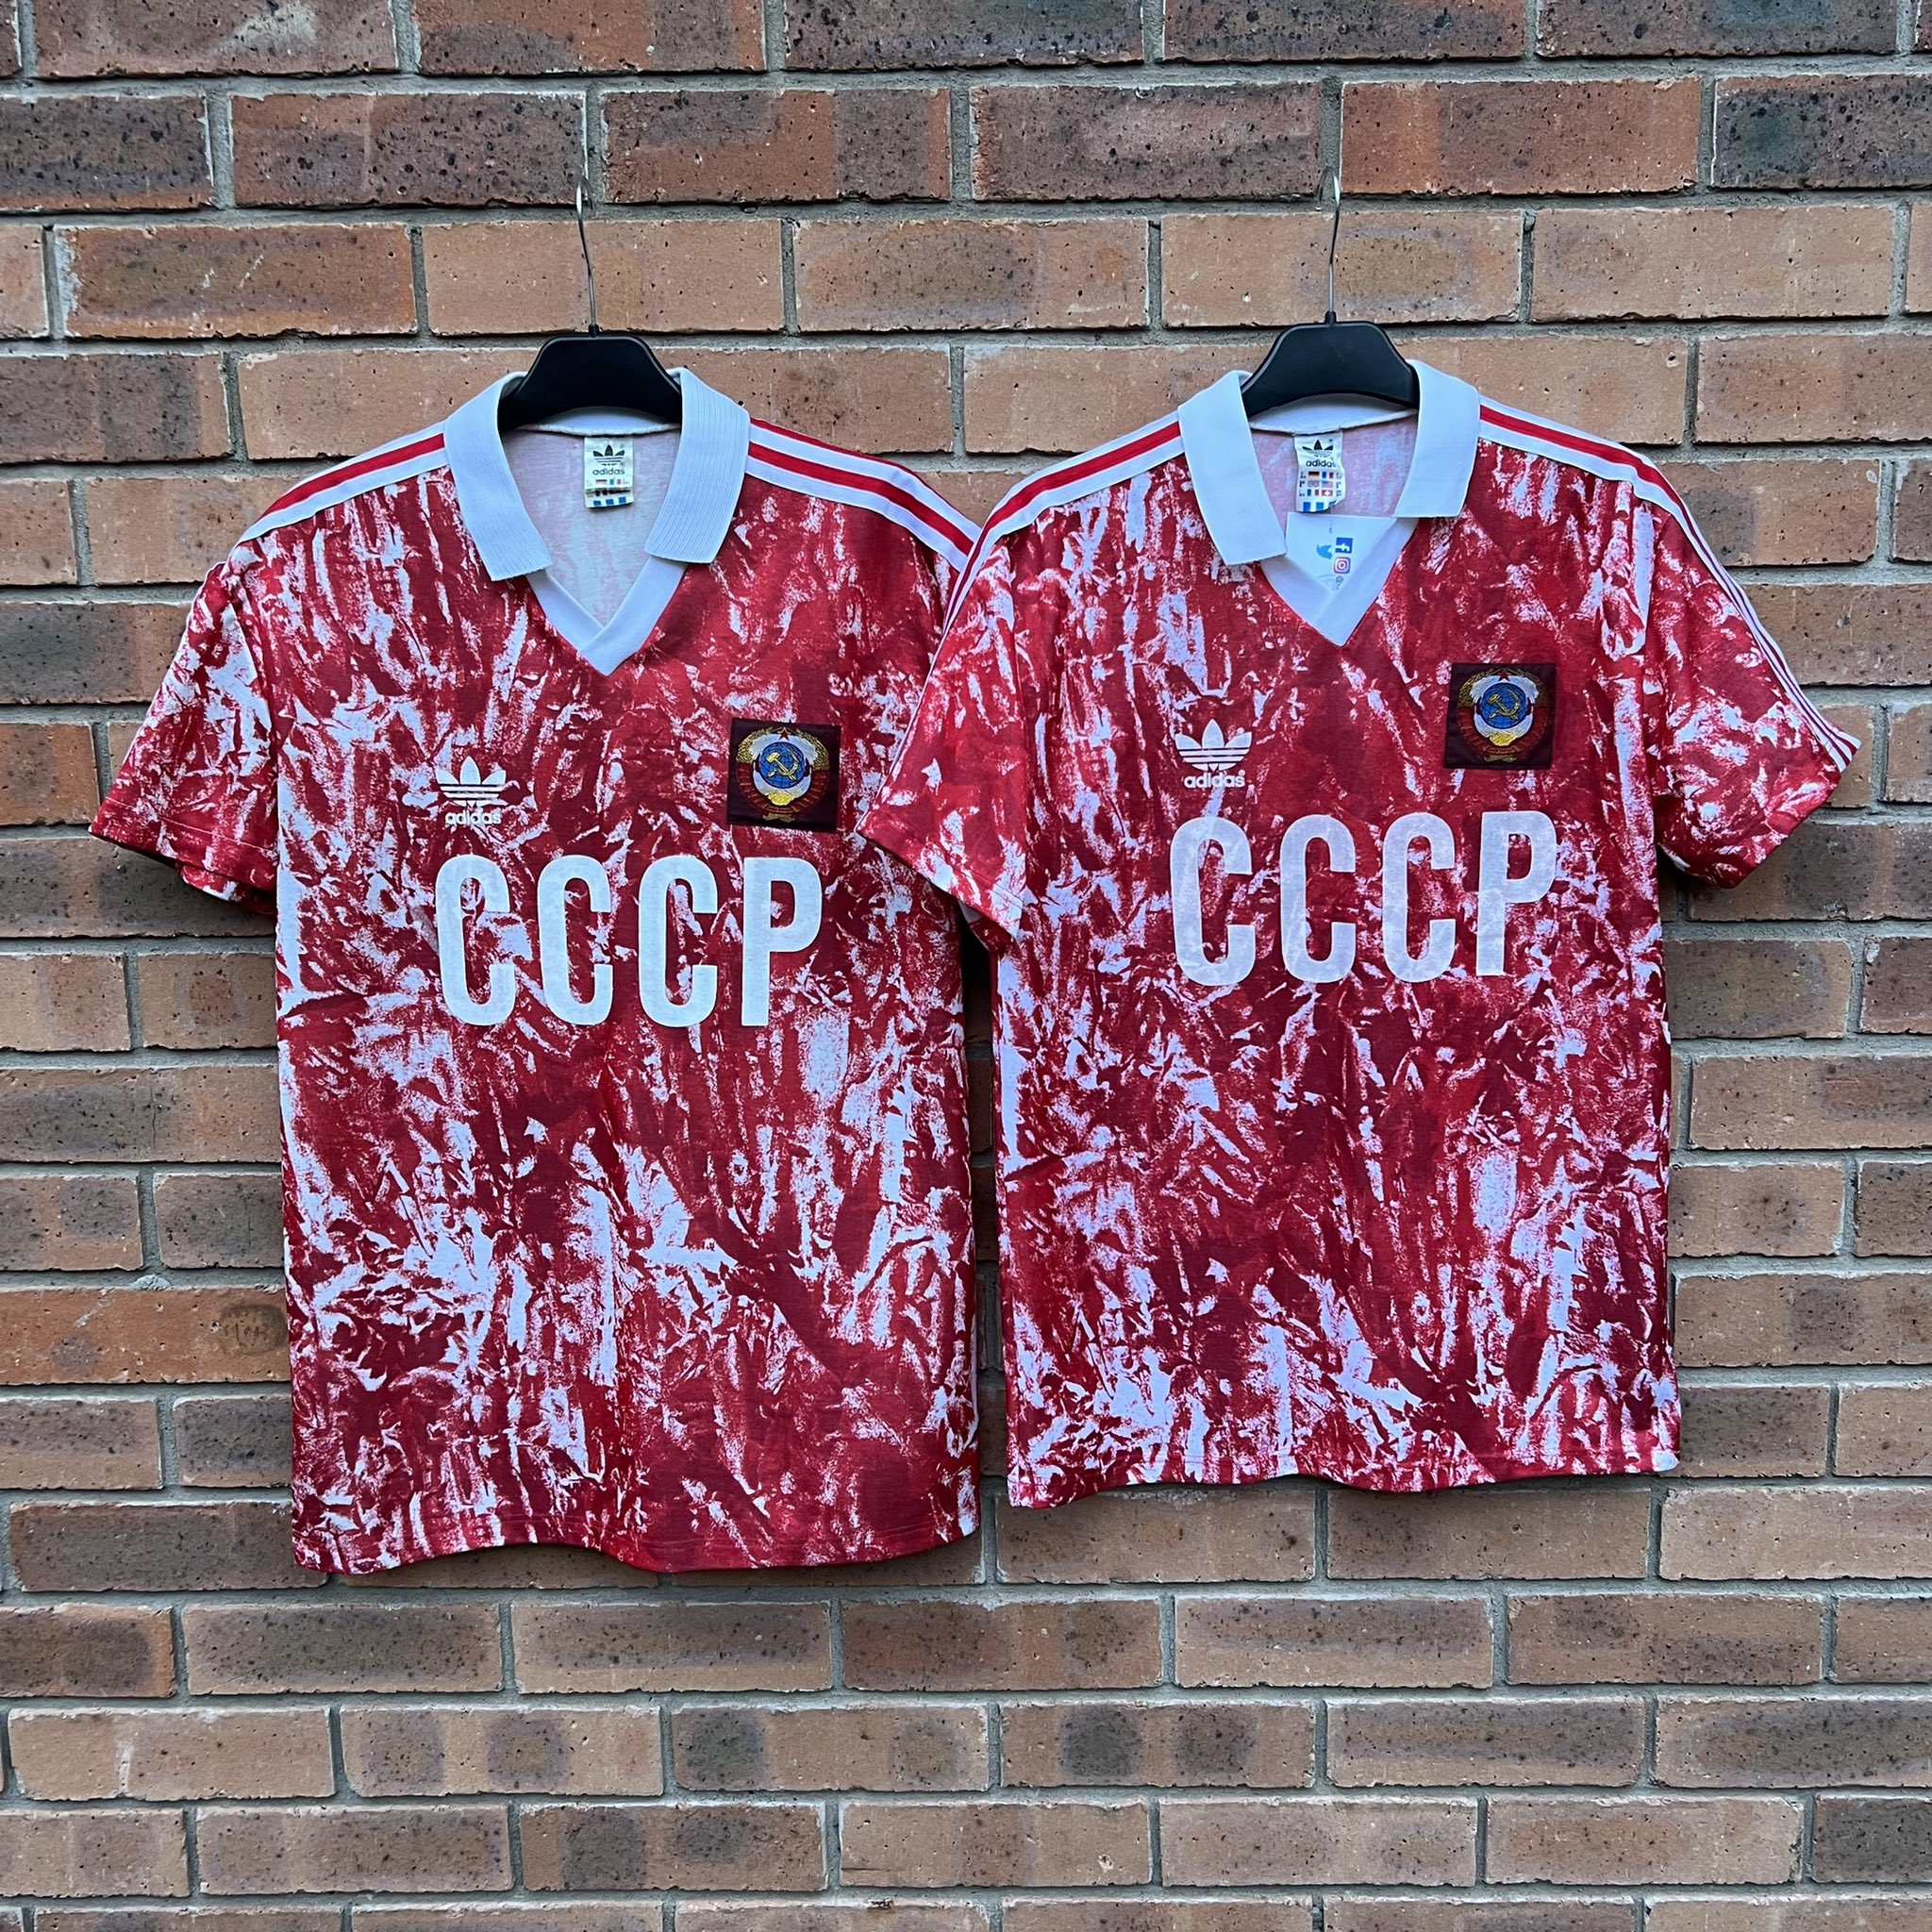 soviet union 1989 shirt